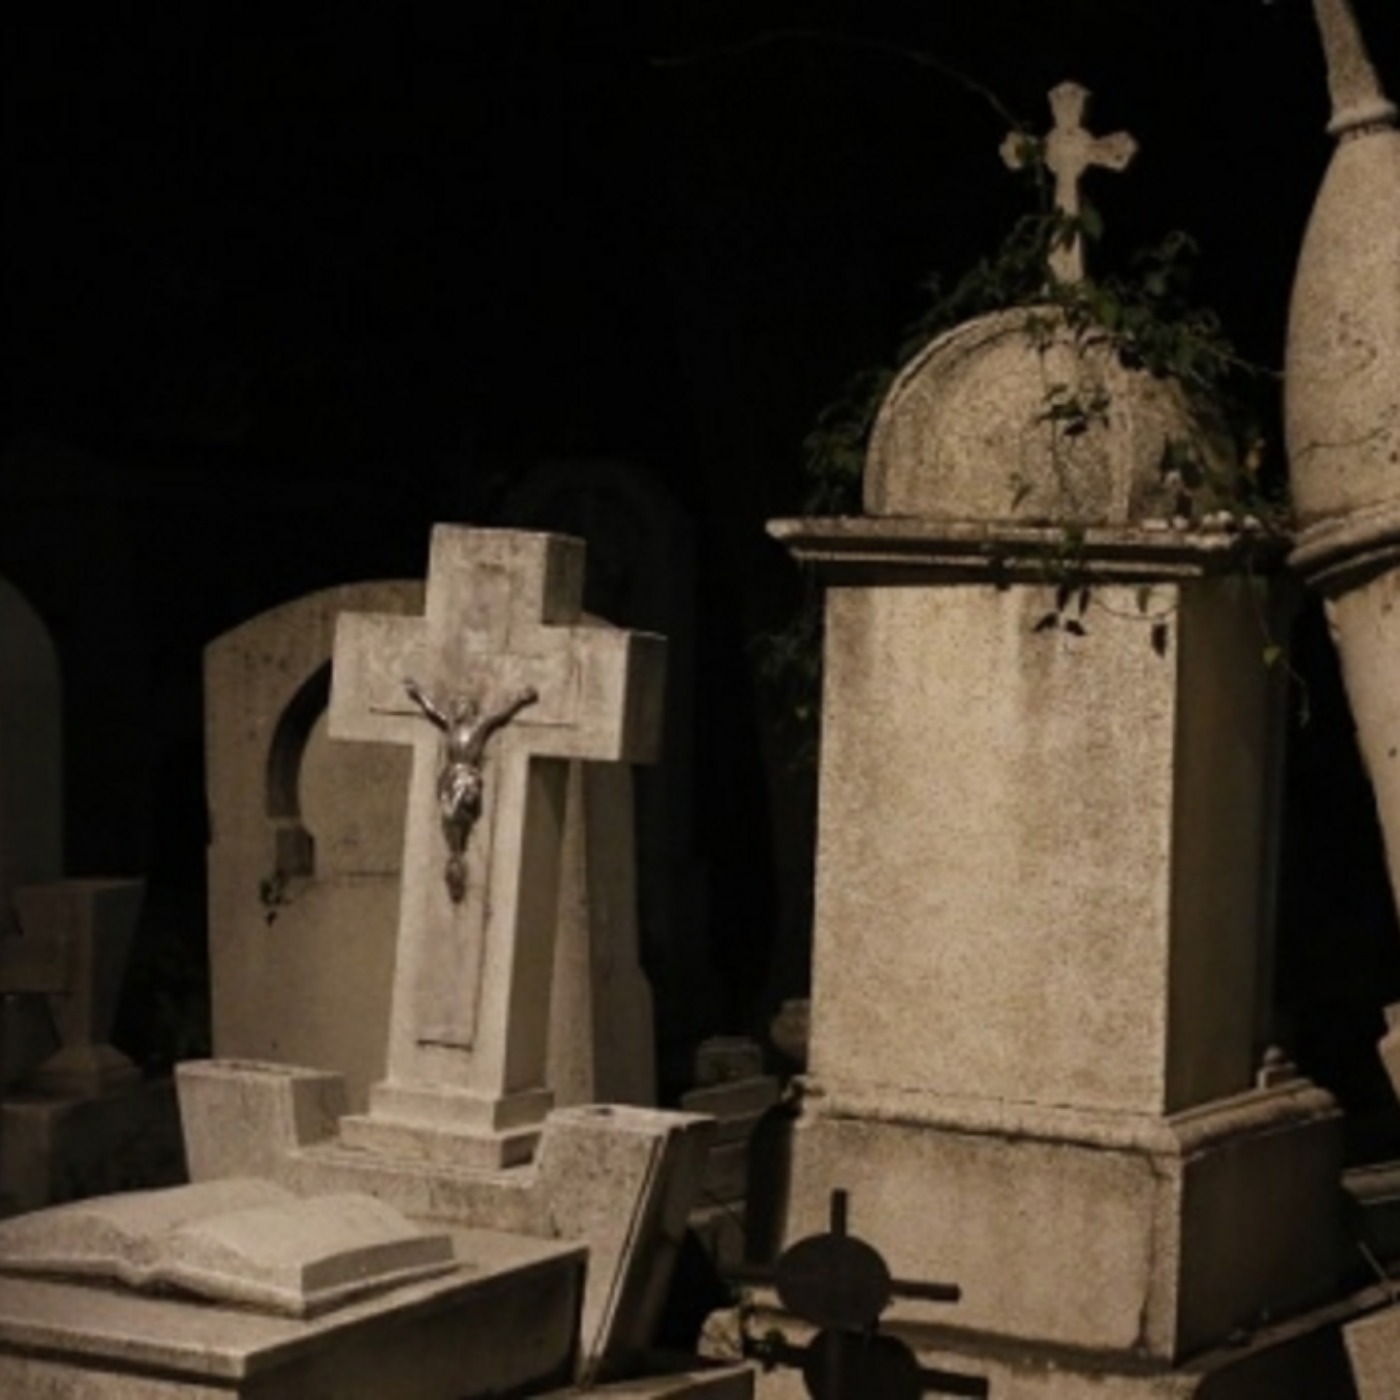 Trabajo en un cementerio siguiendo reglas extrañas